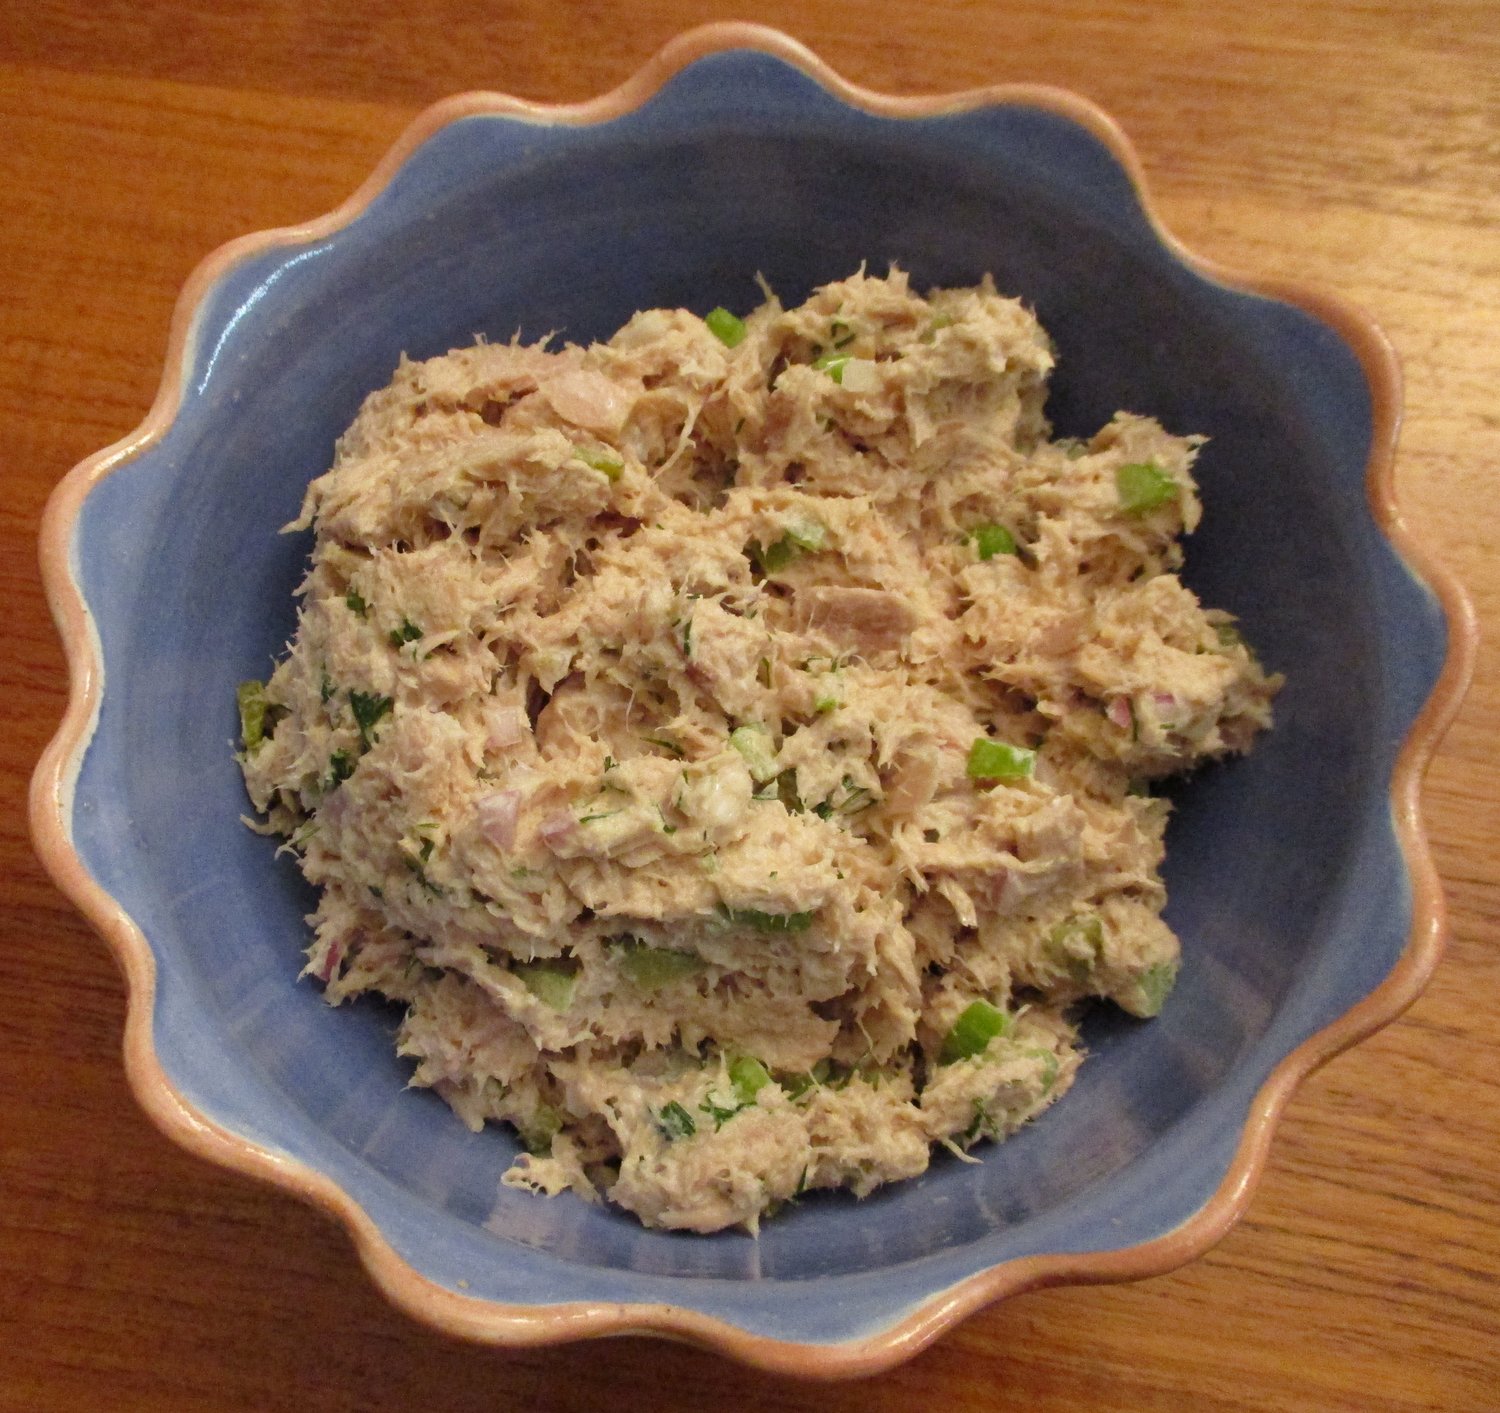 Tuna fish salad with character.